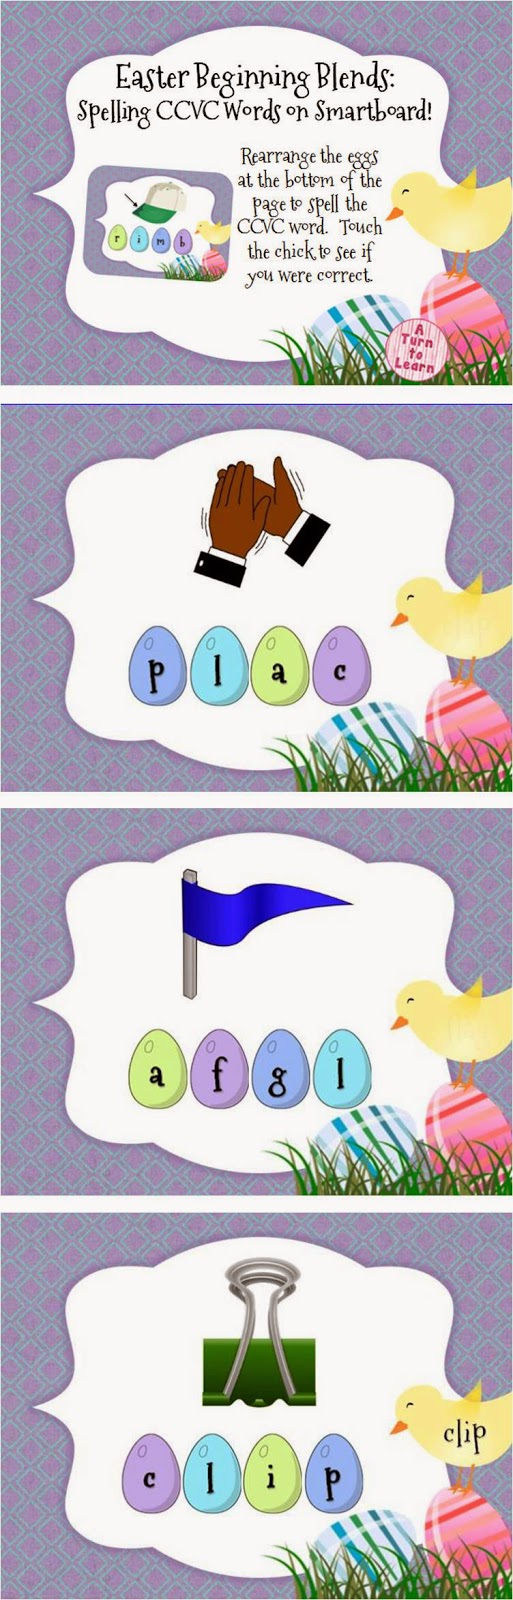 Easter Beginning Blends CCVC Words Smartboard Game